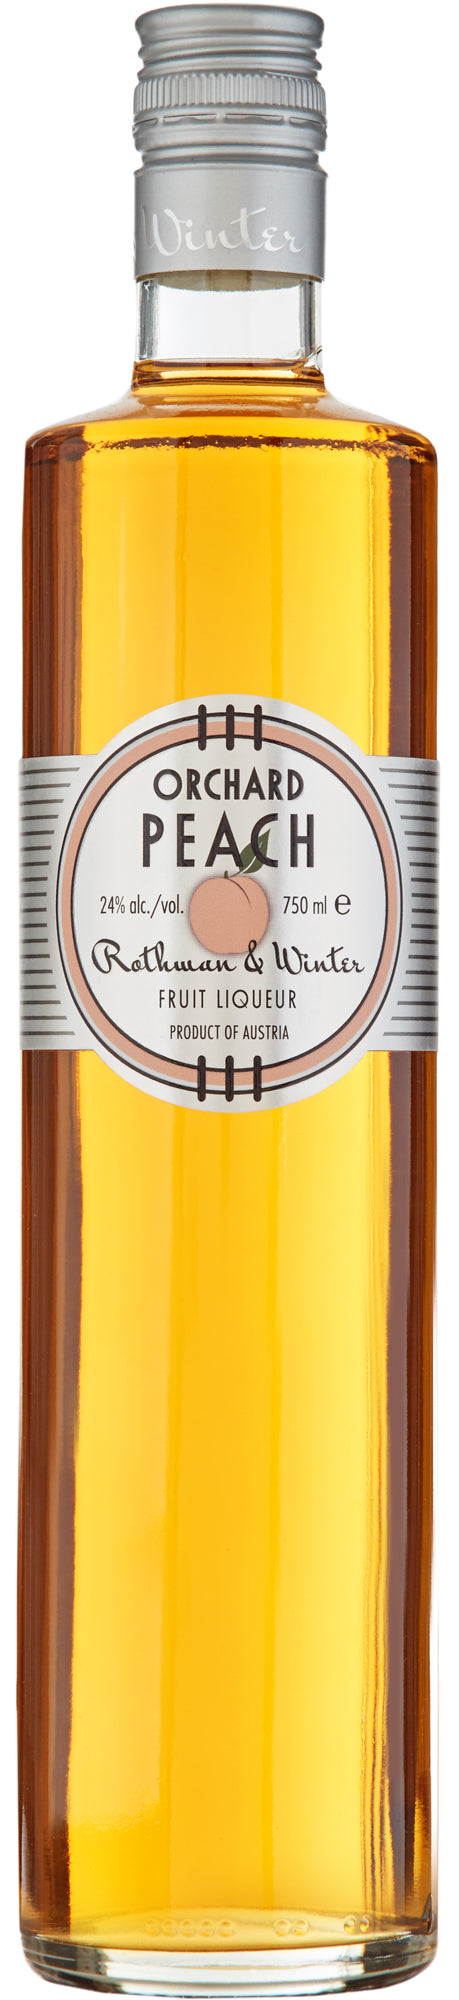 Rothman & Winter Orchard Peach Liqueur Austria